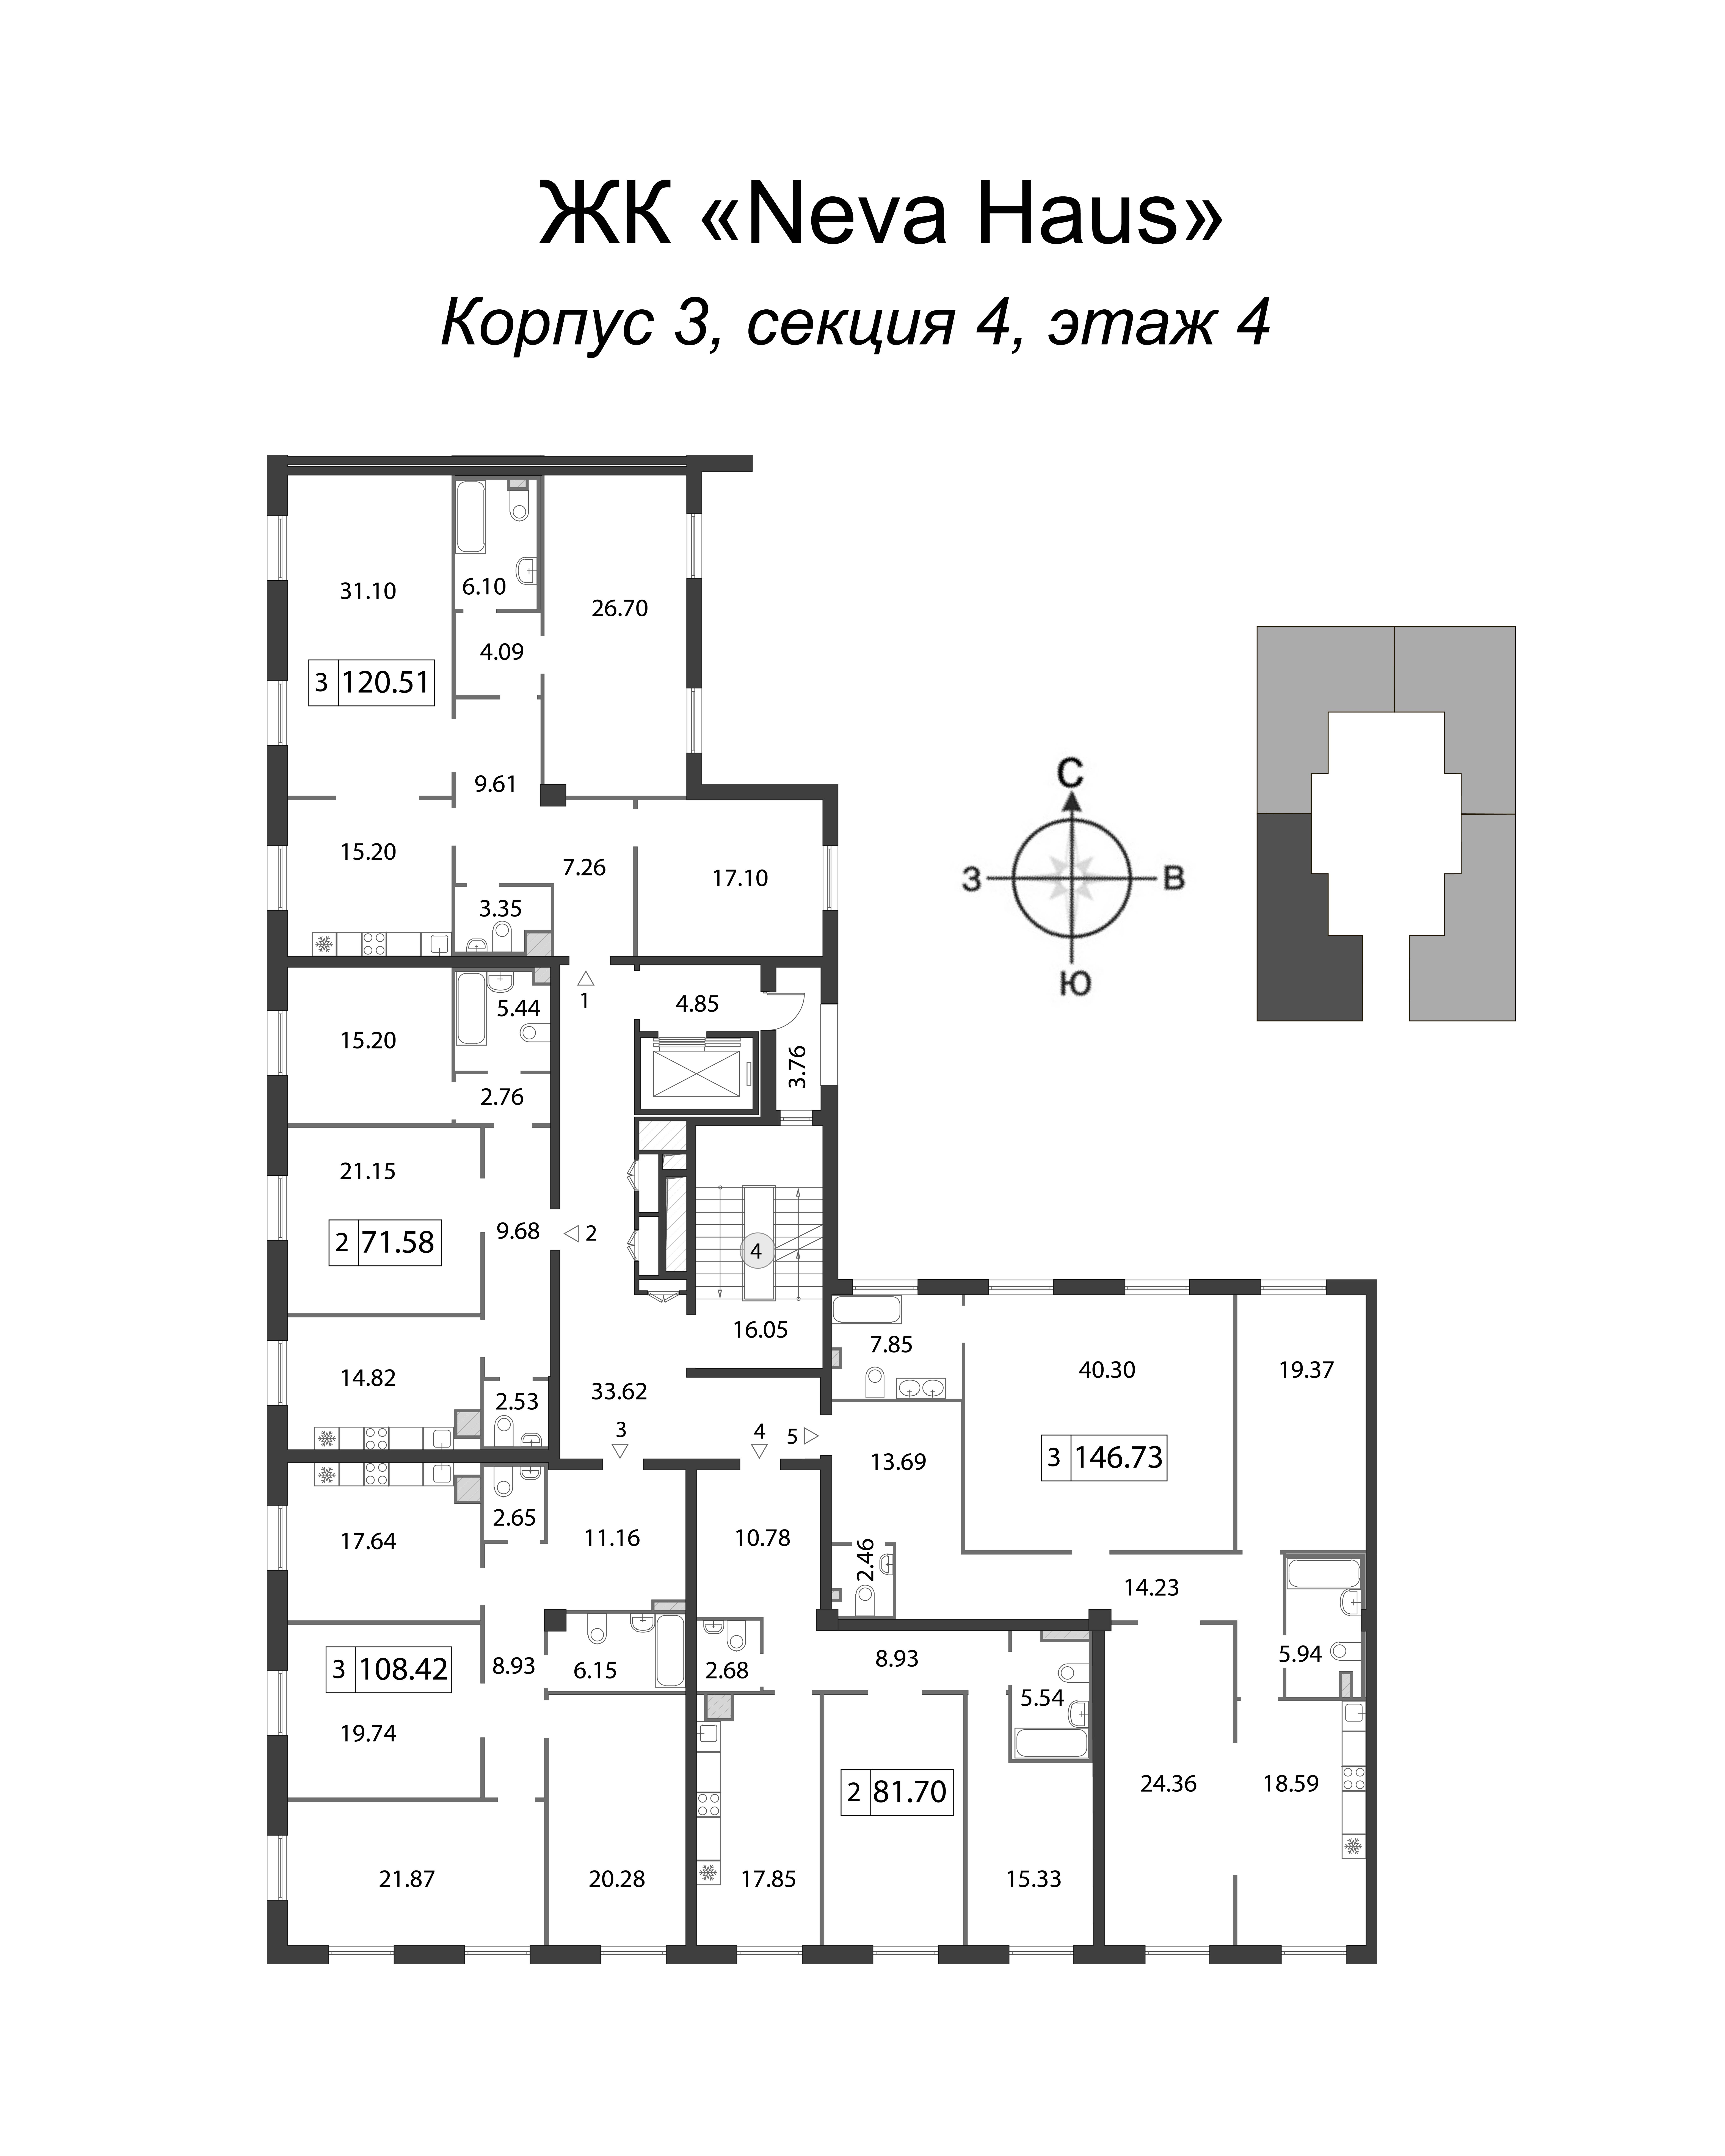 4-комнатная (Евро) квартира, 147 м² в ЖК "Neva Haus" - планировка этажа